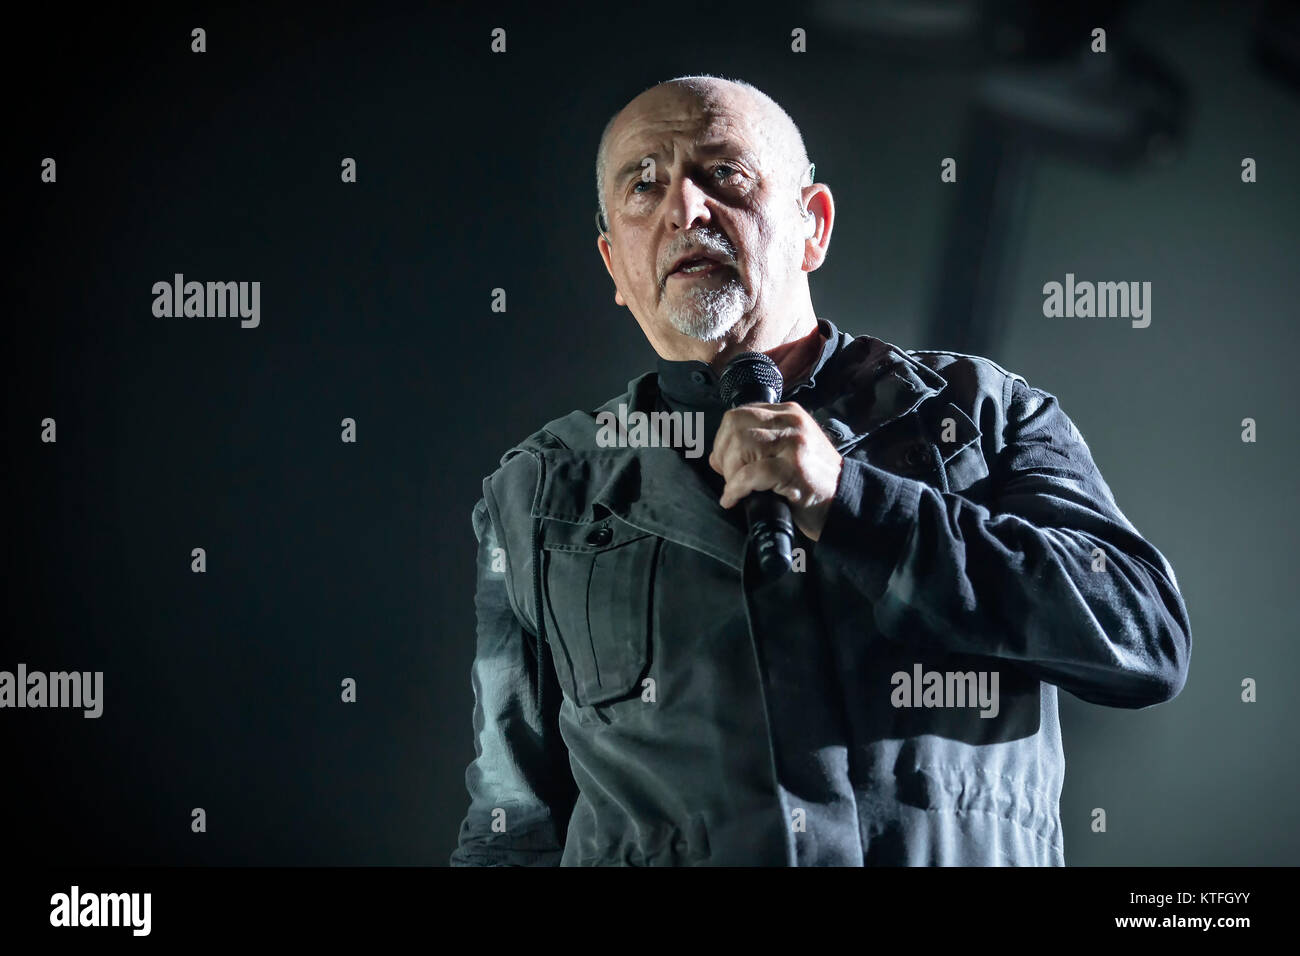 Il cantante inglese, compositore e musicista Peter Gabriel esegue un concerto dal vivo a Oslo Spektrum. Norvegia, 23/05 2014. Foto Stock